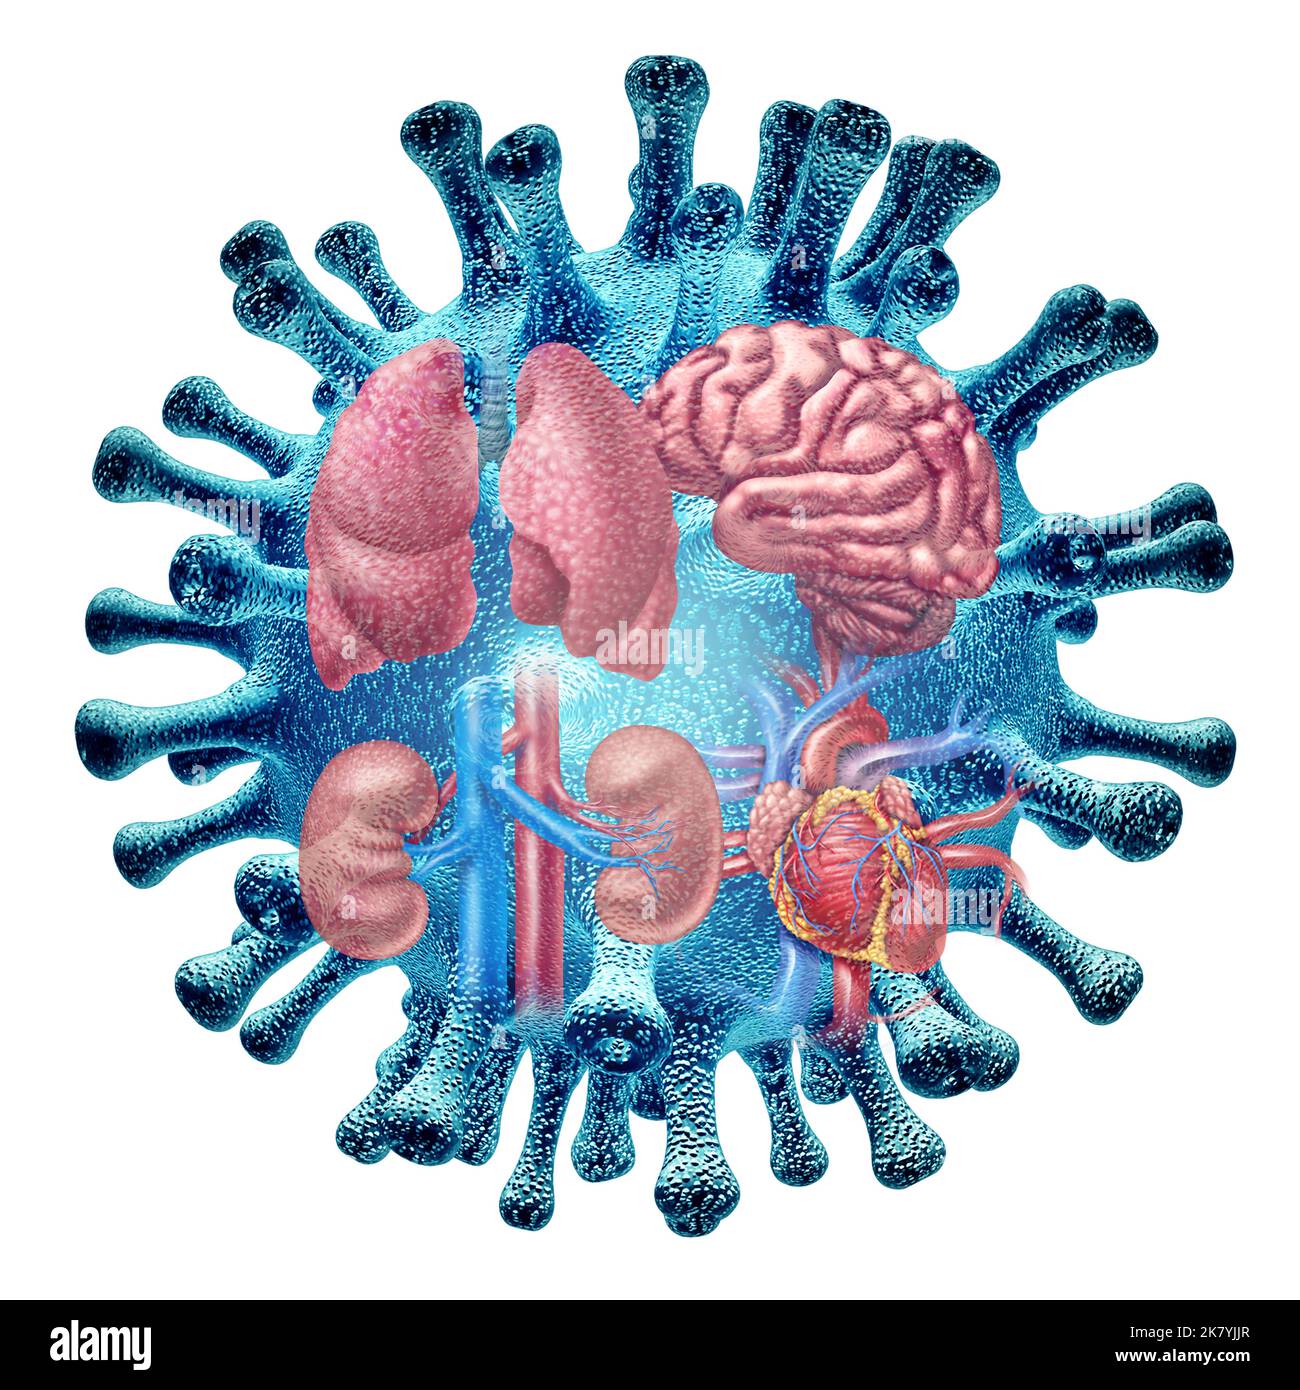 Virusorgan-Infektion und Long Covid-Syndrom oder Coronavirus-Pandemiesymptome, die als Spediteur einer Virusinfektion auf dem Herz der Lunge fortbestehen. Stockfoto